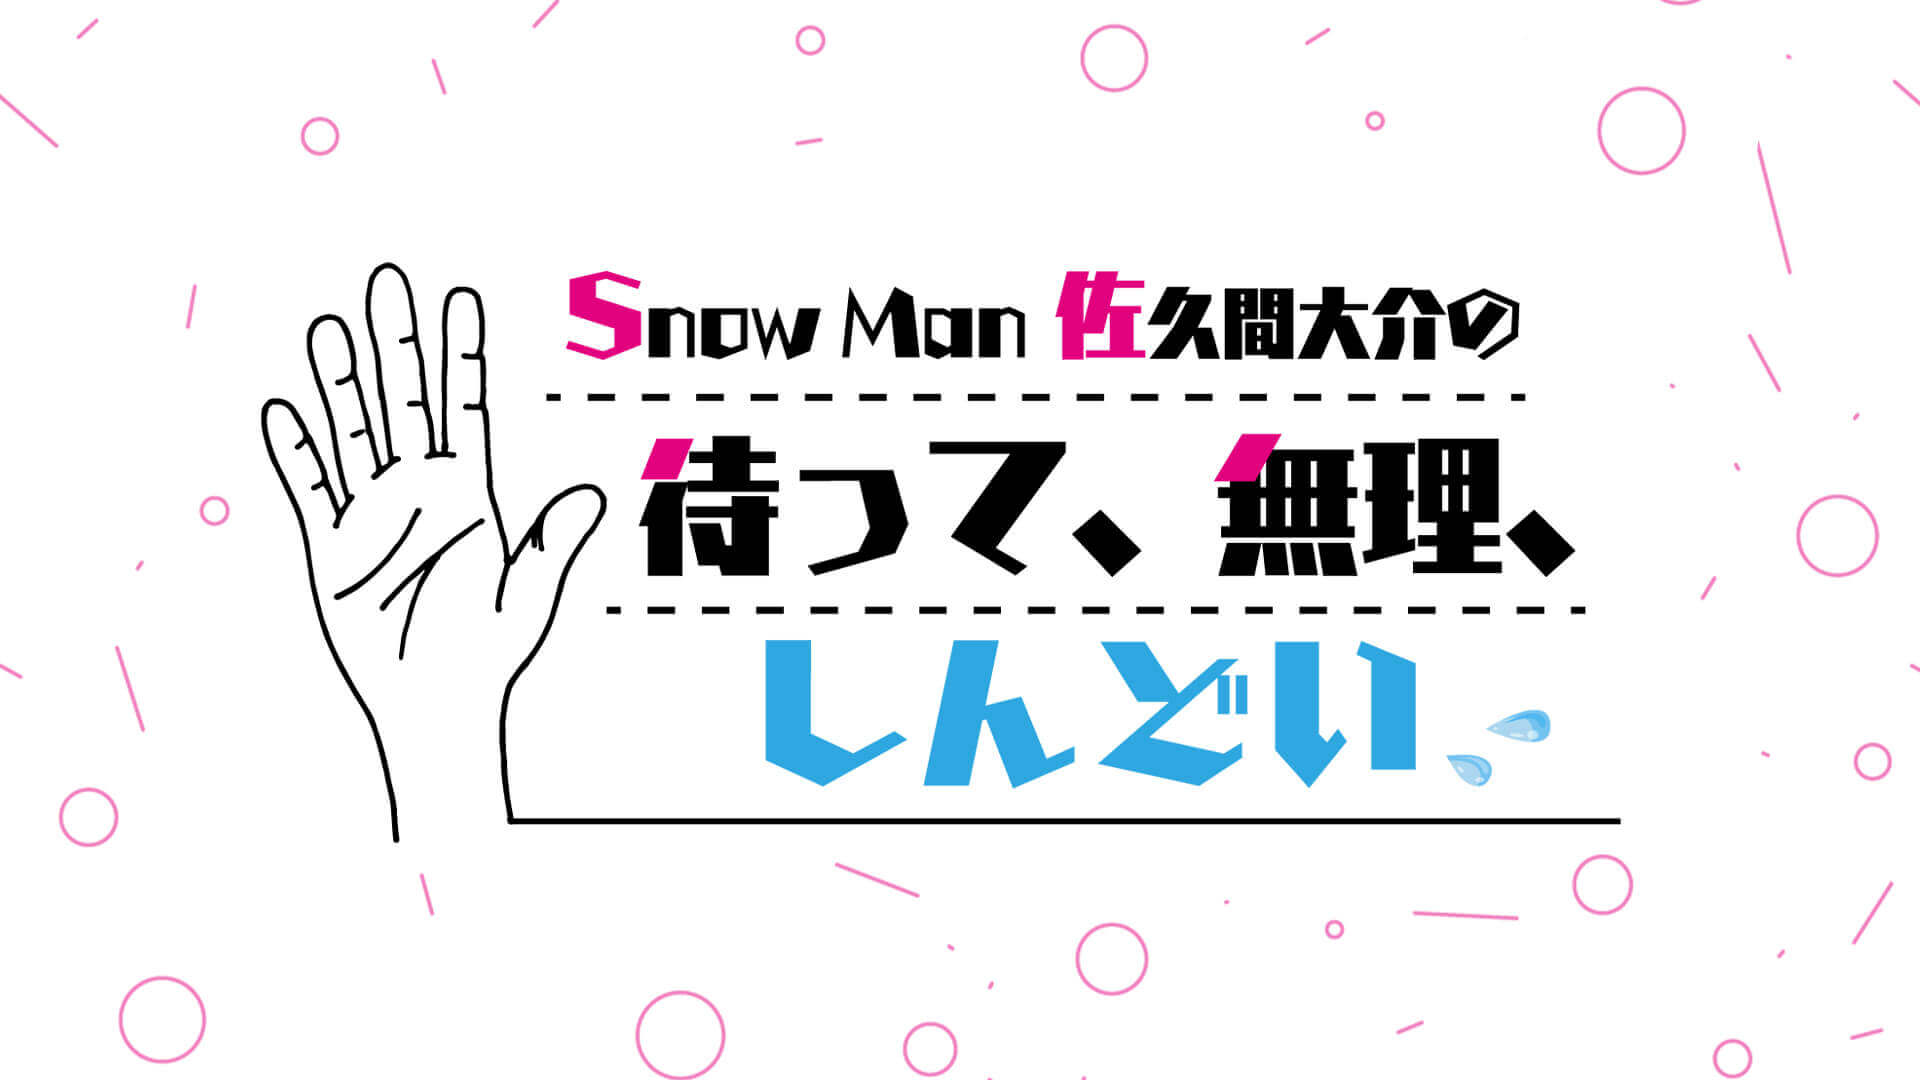 待てムリ初の公開収録！Snow Man佐久間大介が初めて行った公開収録は…下野紘のラジオ番組！？